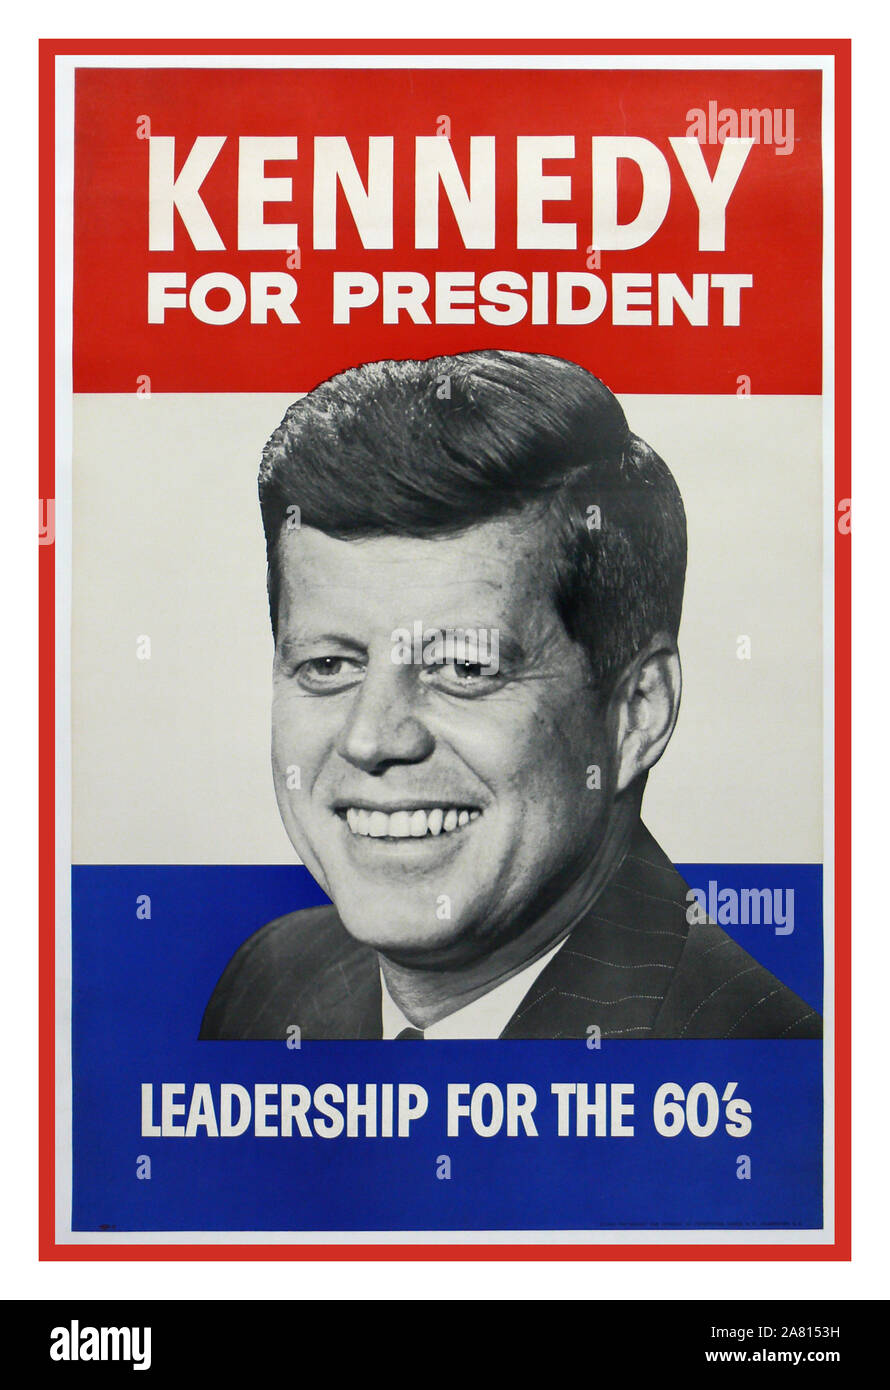 KENNEDY JFK Vintage Wahlplakat USA 1960 John F. Kennedy 1960 Presidential Campaign Poster...."Kennedy for President' Leadership for the 60s die Einweihung von John F. Kennedy fand am 20. Januar 1961 auf der neu renovierten Ostfront des Kapitols der Vereinigten Staaten statt. John Fitzgerald Kennedy wurde als 35. Präsident der Vereinigten Staaten eingeweiht. Stockfoto